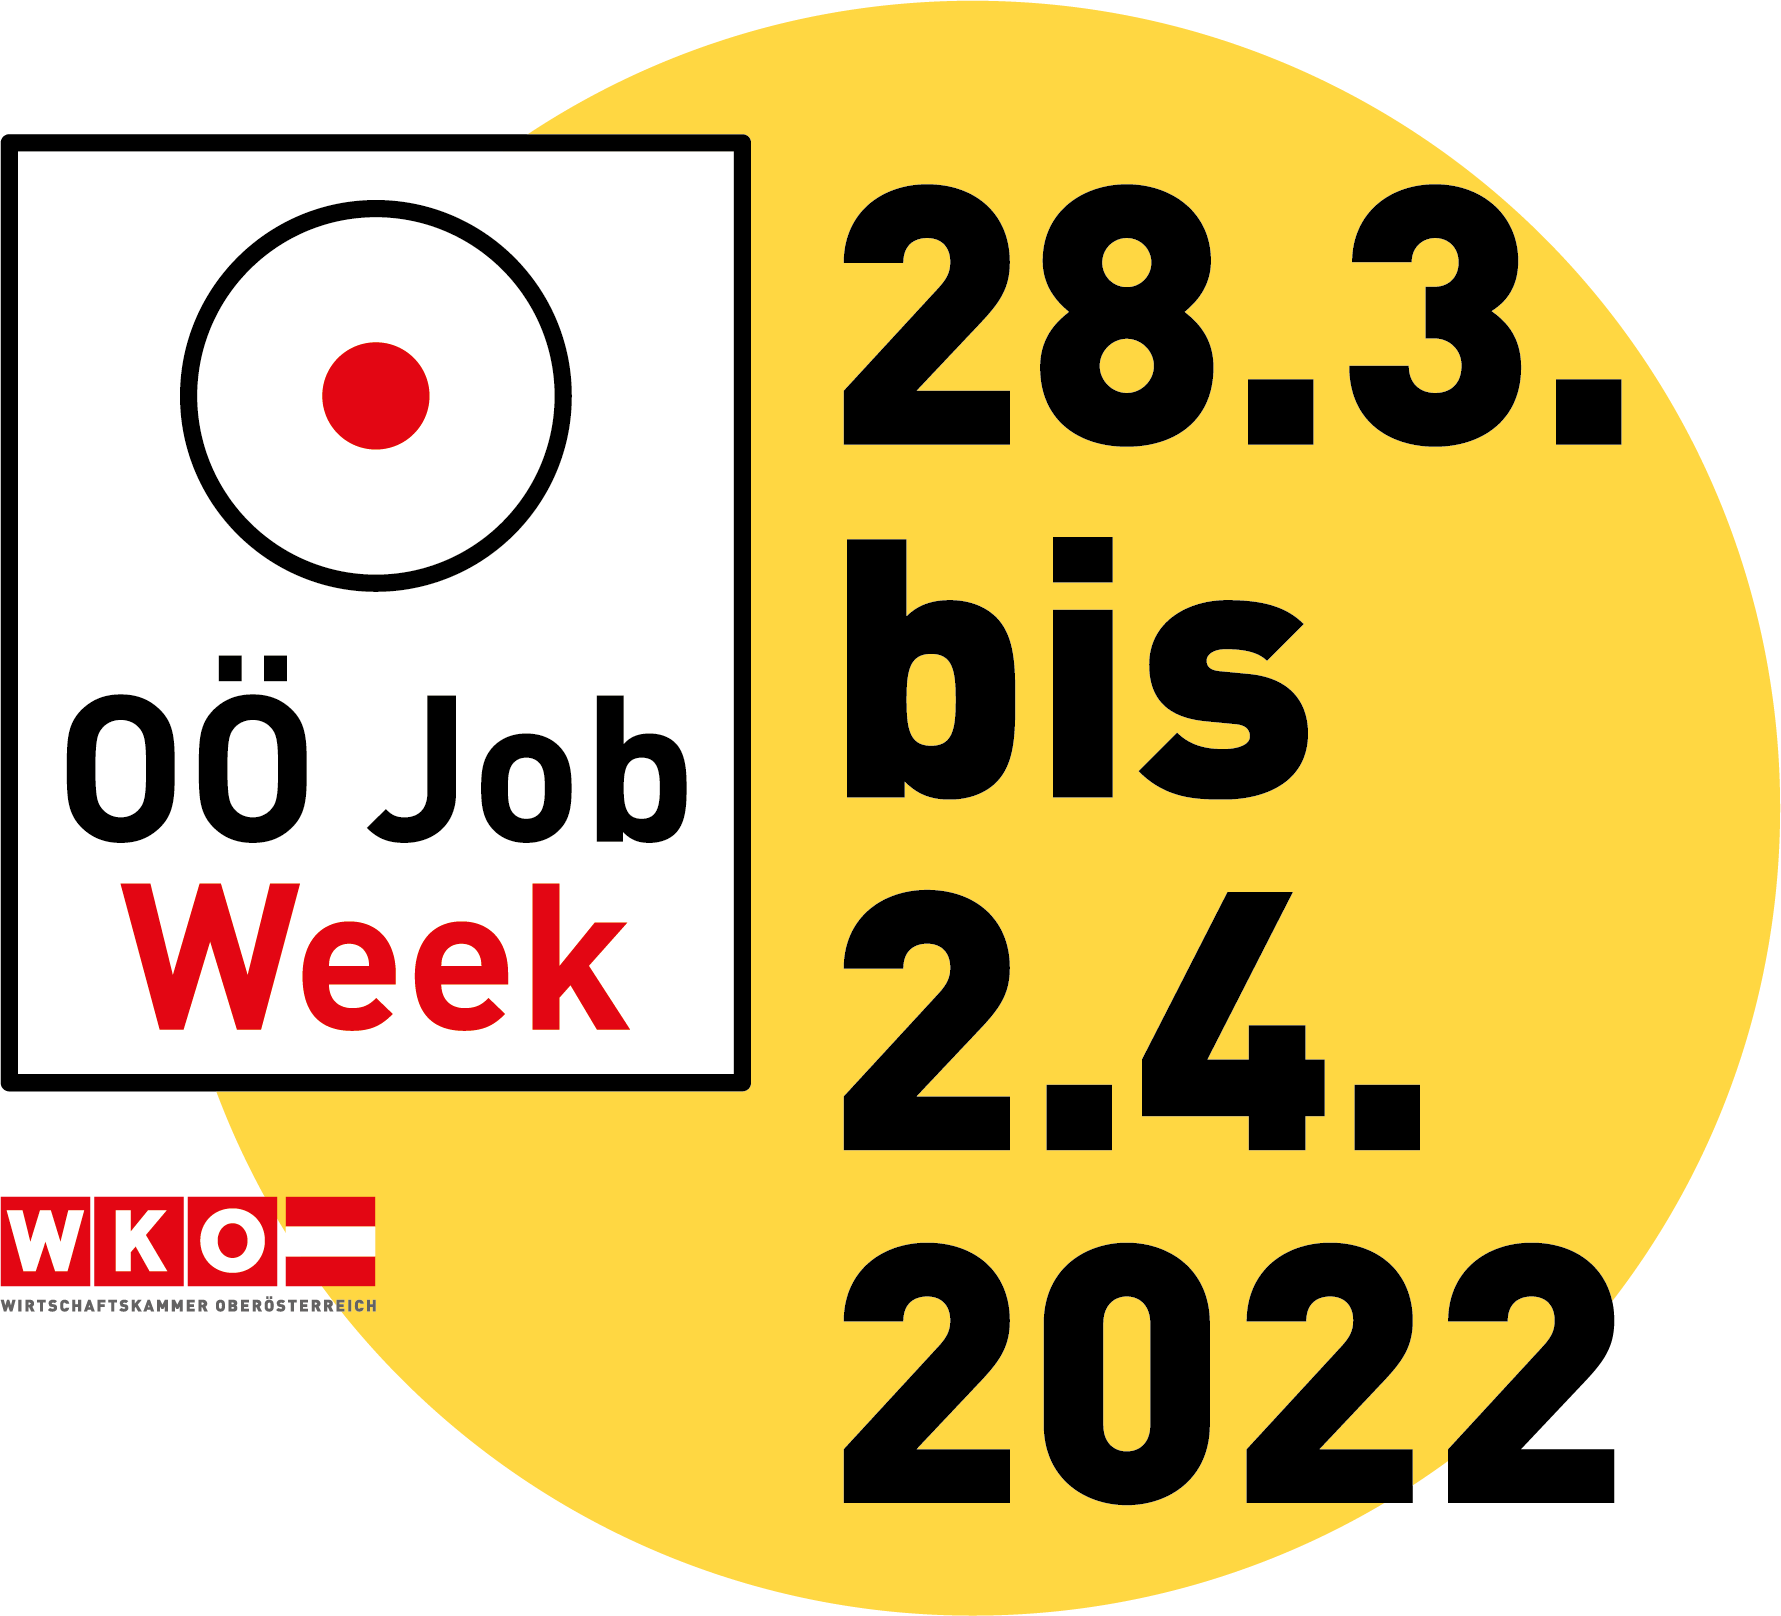 Wir sind dabei bei der OÖ Job Week von 28.3. – 2.4.2022!